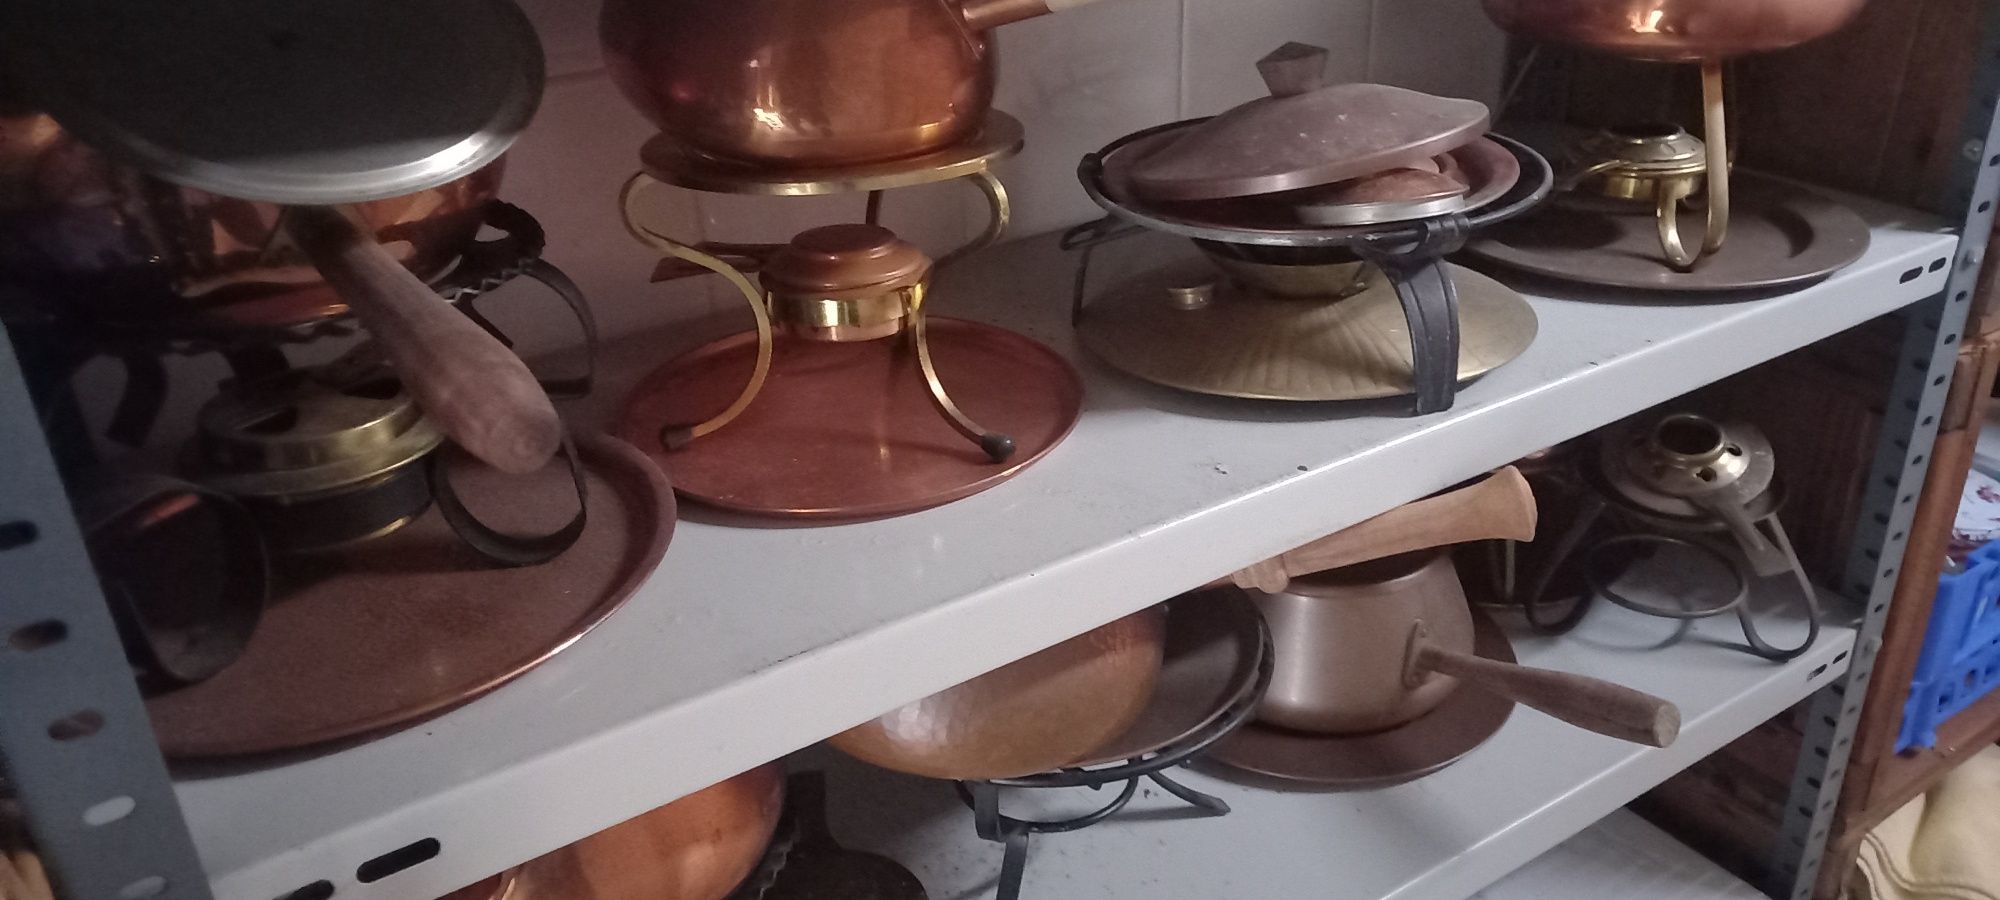 fondues coleção antigos